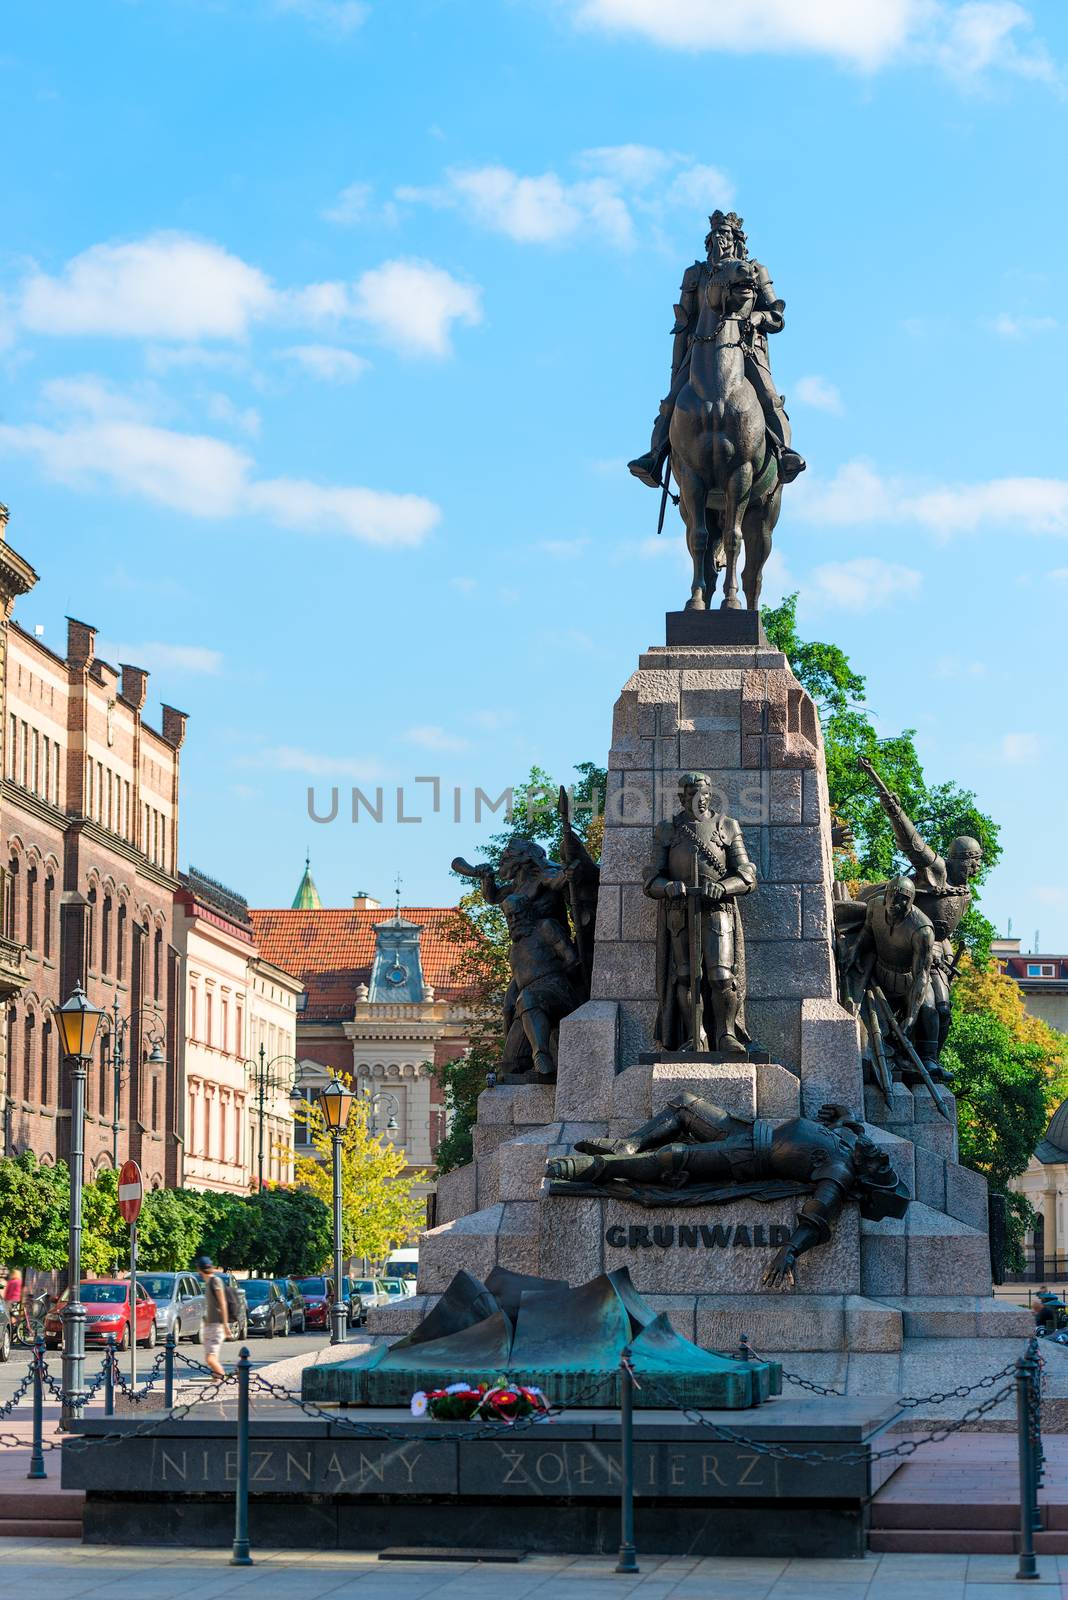 monument in Krakow - Grunwald on horseback by kosmsos111